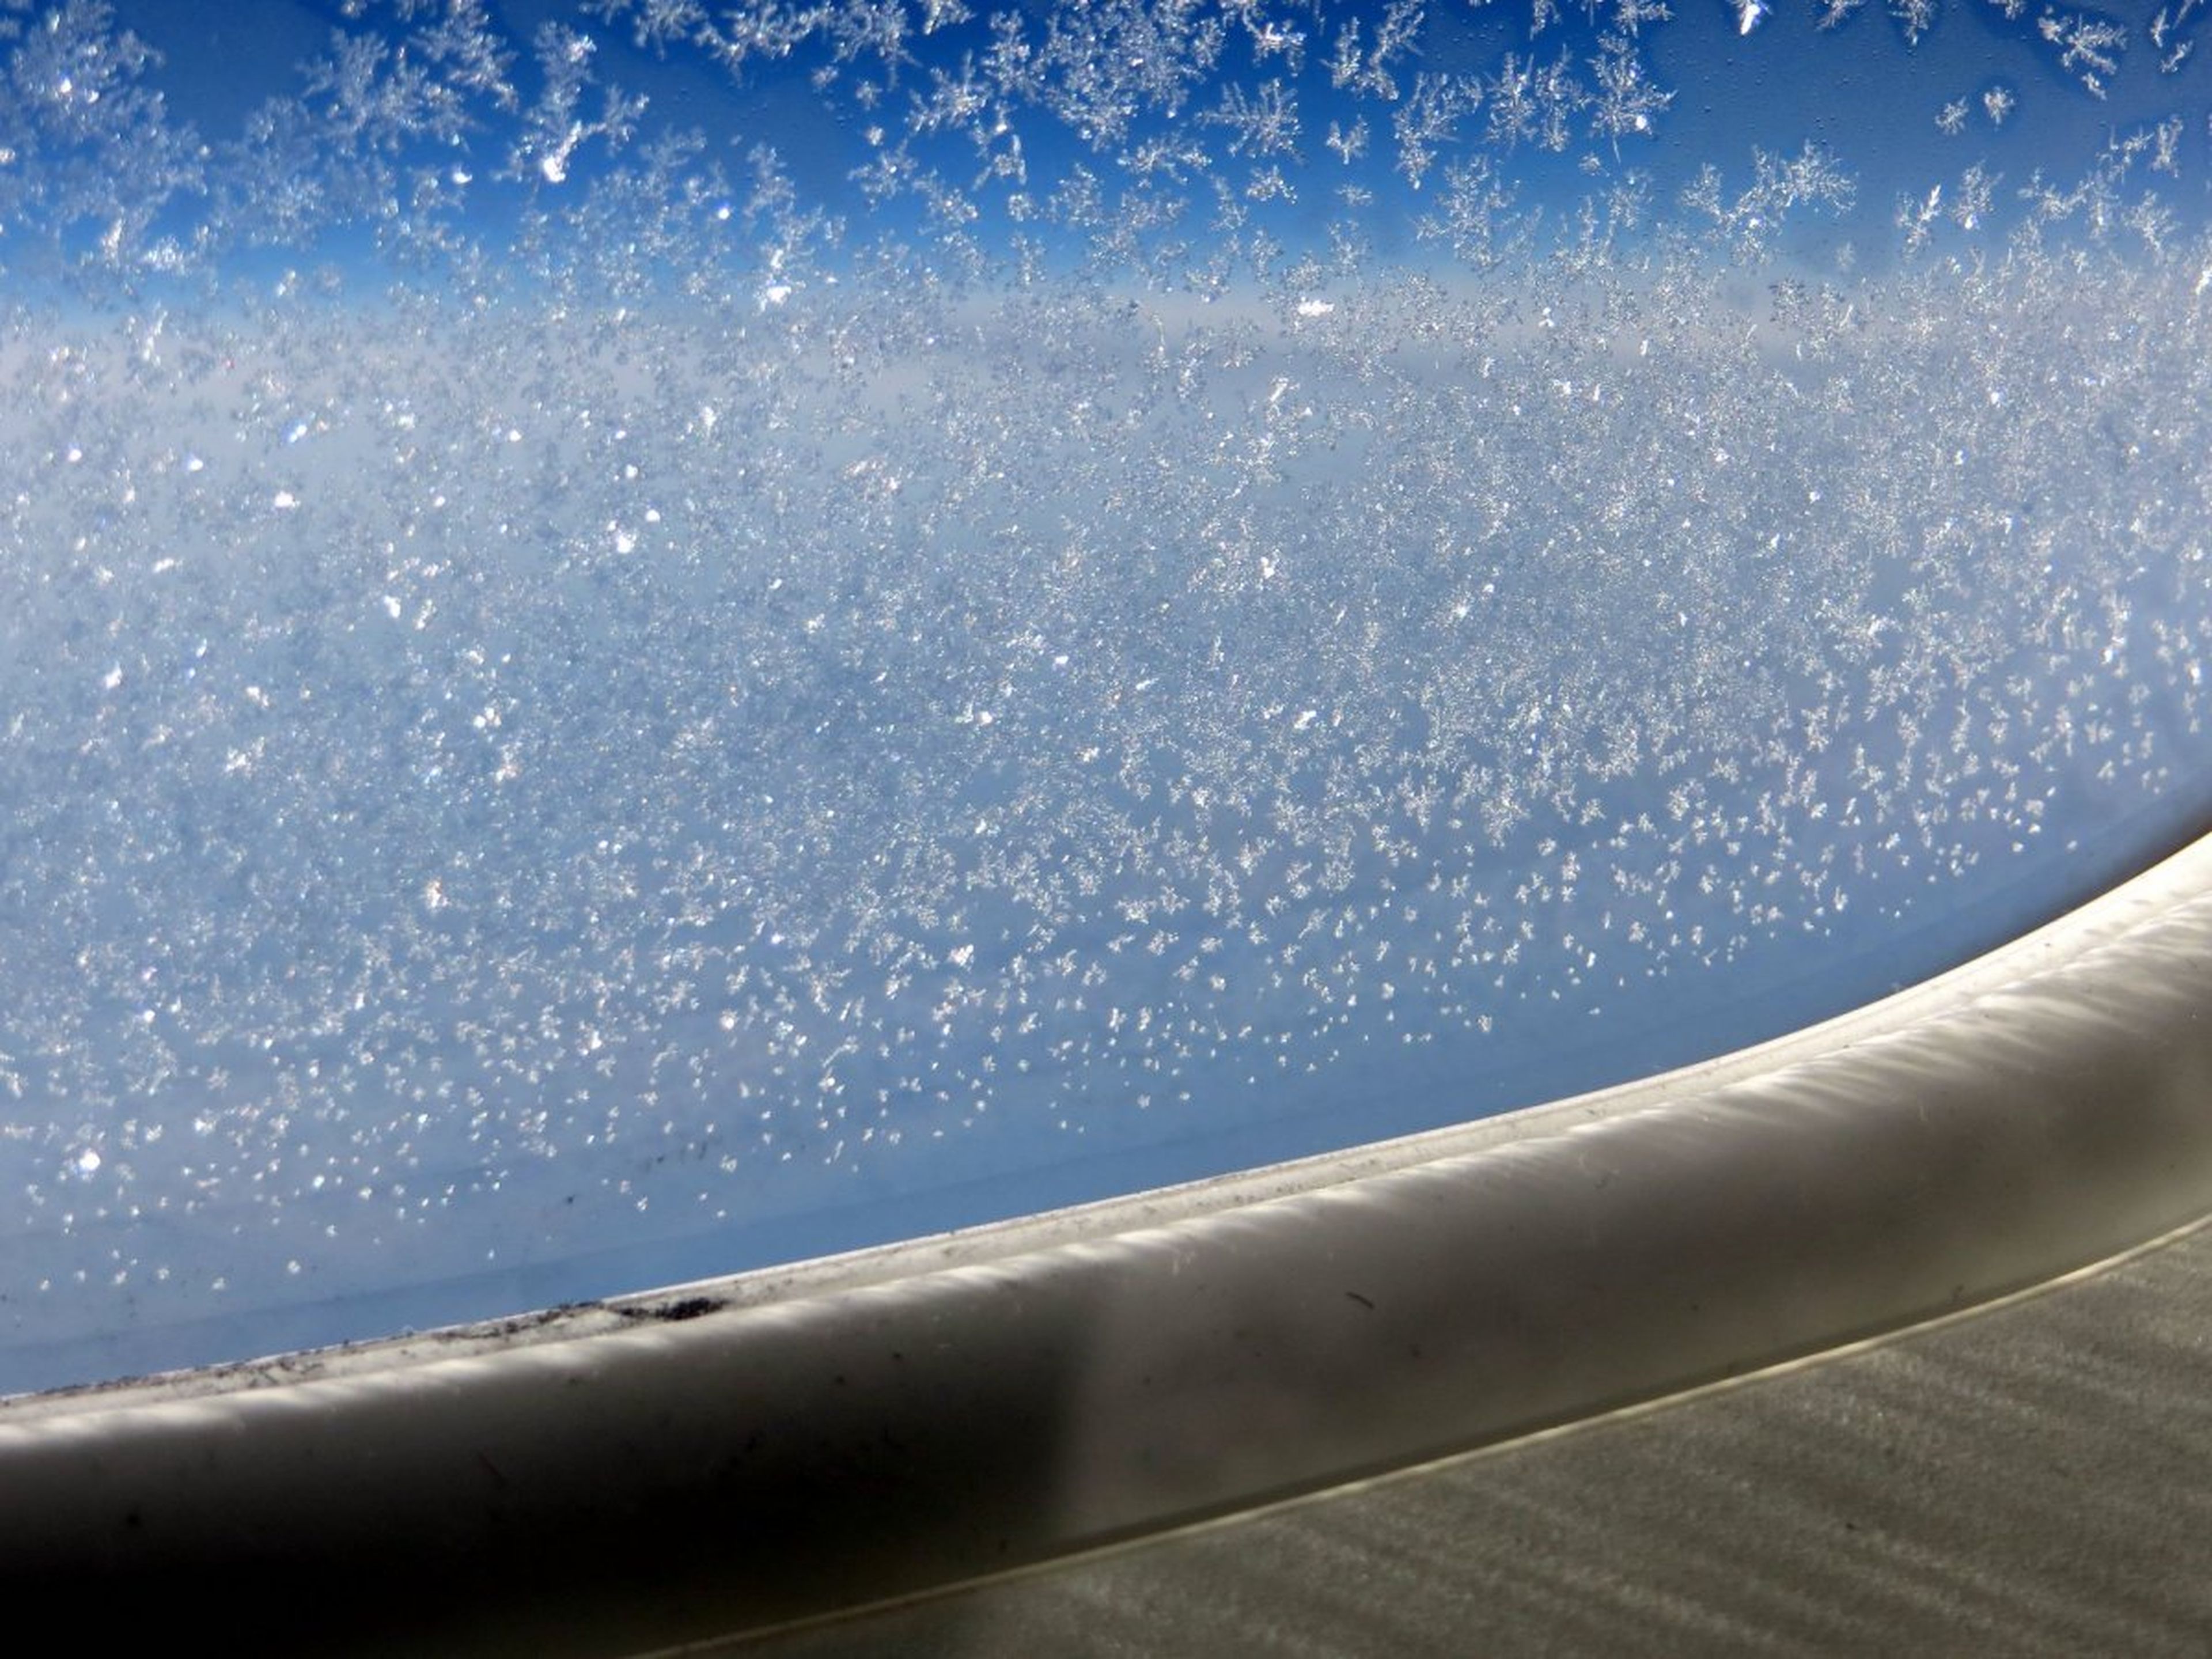 Hielo acumulado en la ventana de un avion